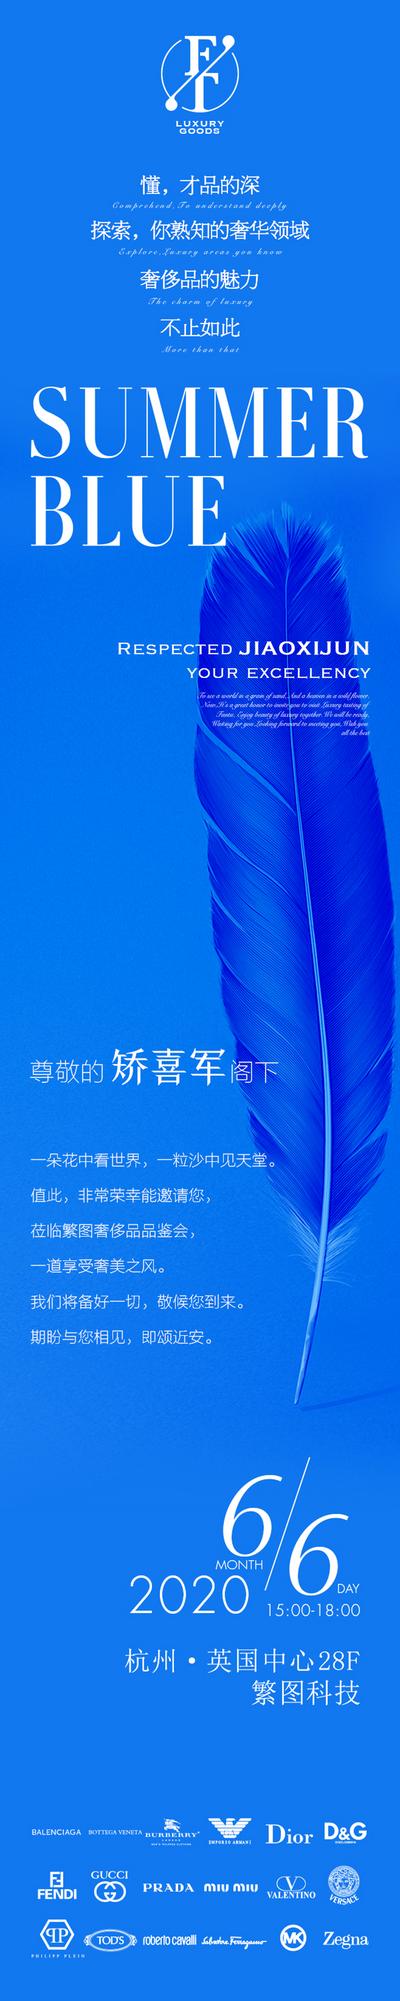 南门网 海报 长图 邀请函 奢侈品 沙龙 简约 大气 蓝色 